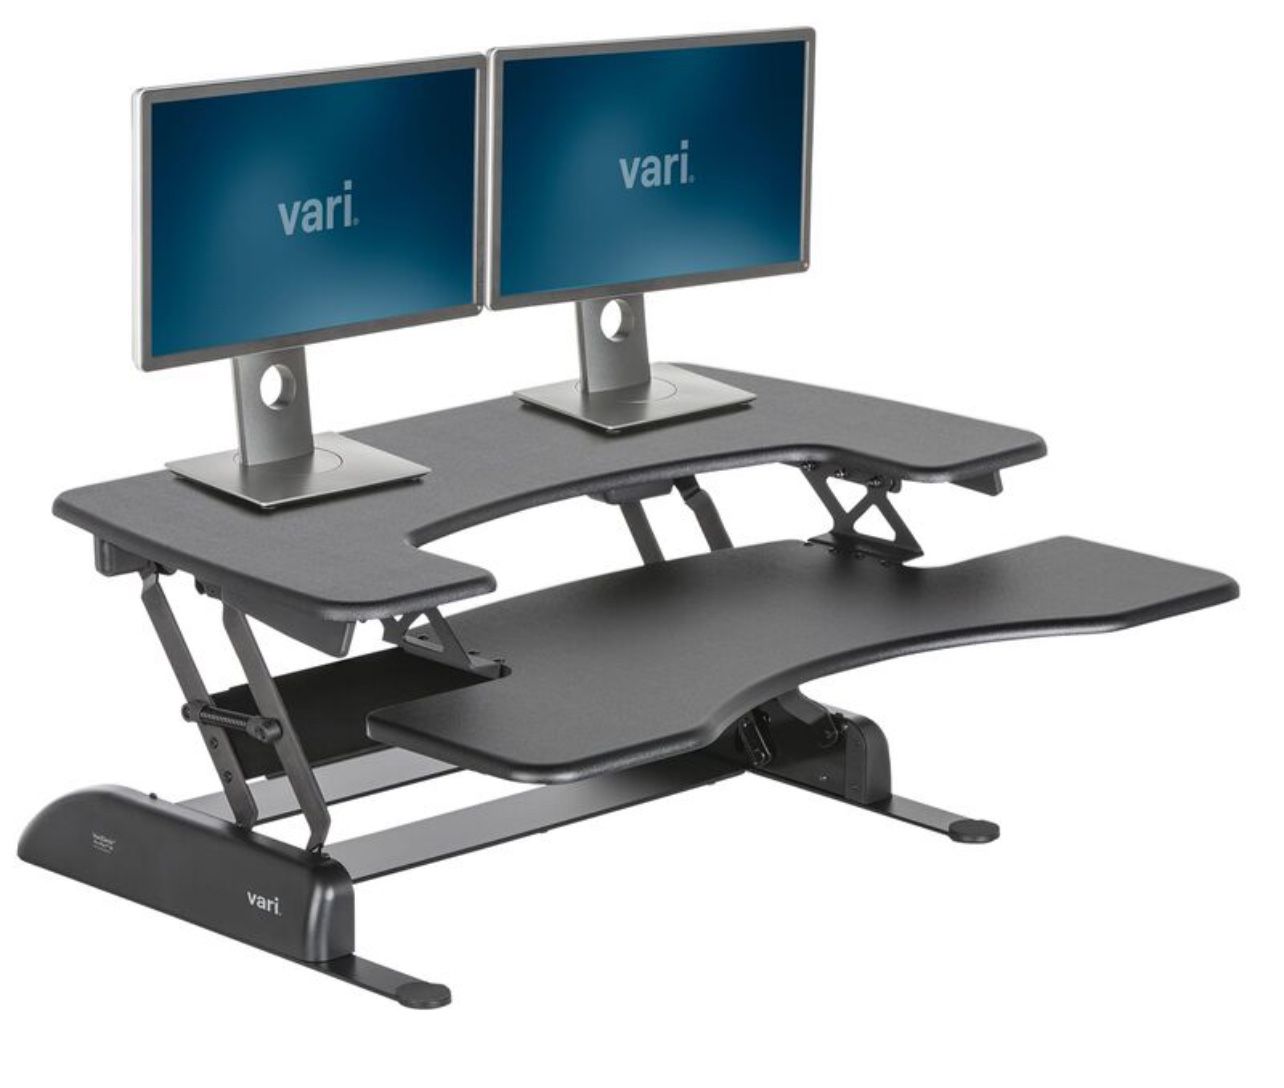 Vari Desk Pro Stand Up Desk Adjustable Heights